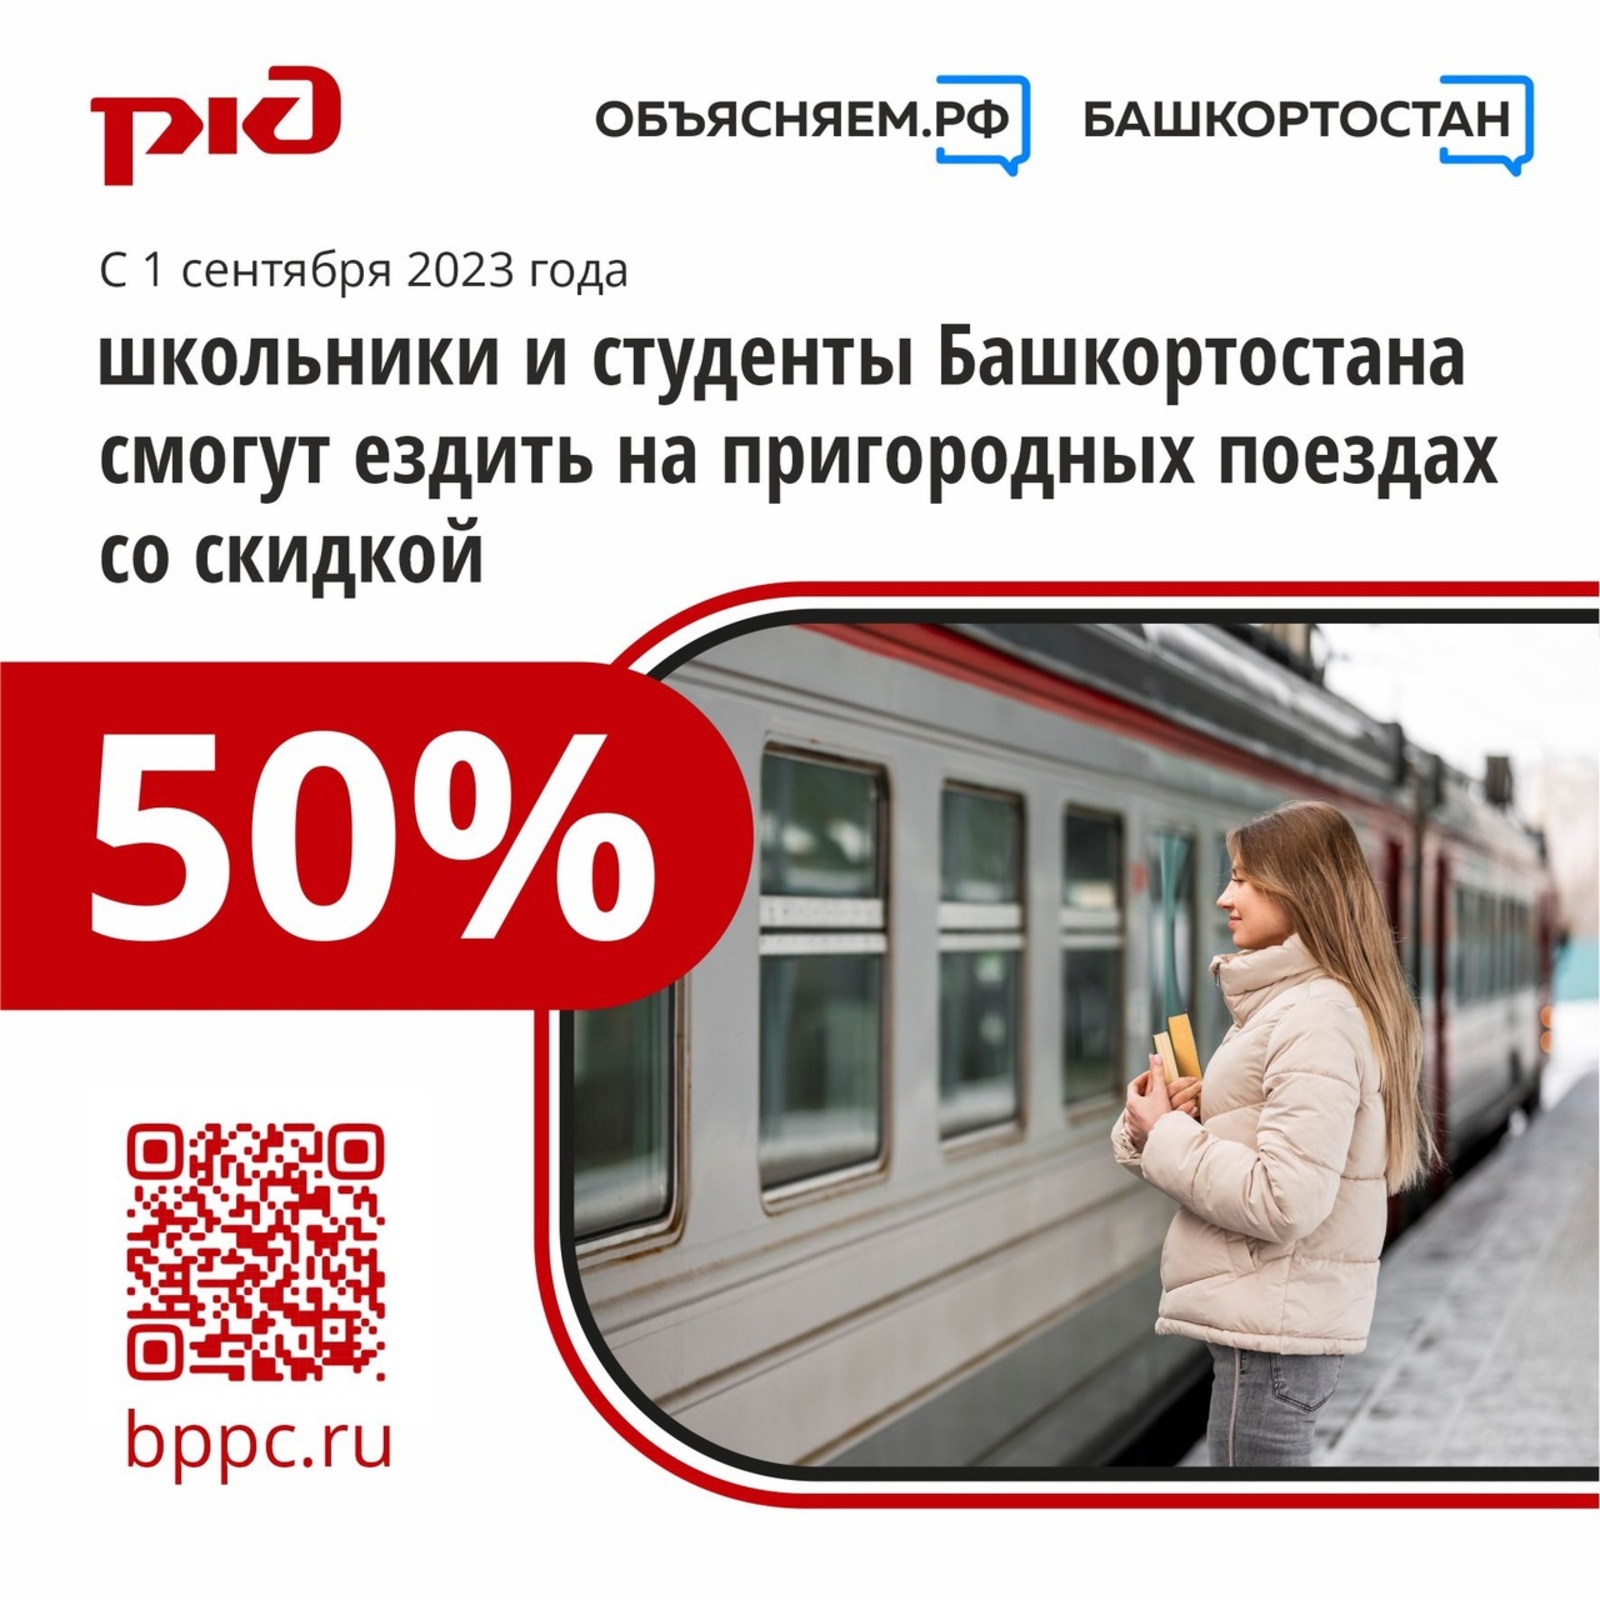 Школьники и студенты Башкортостана, которые учатся очно, смогут ездить на пригородных поездах со скидкой 50%